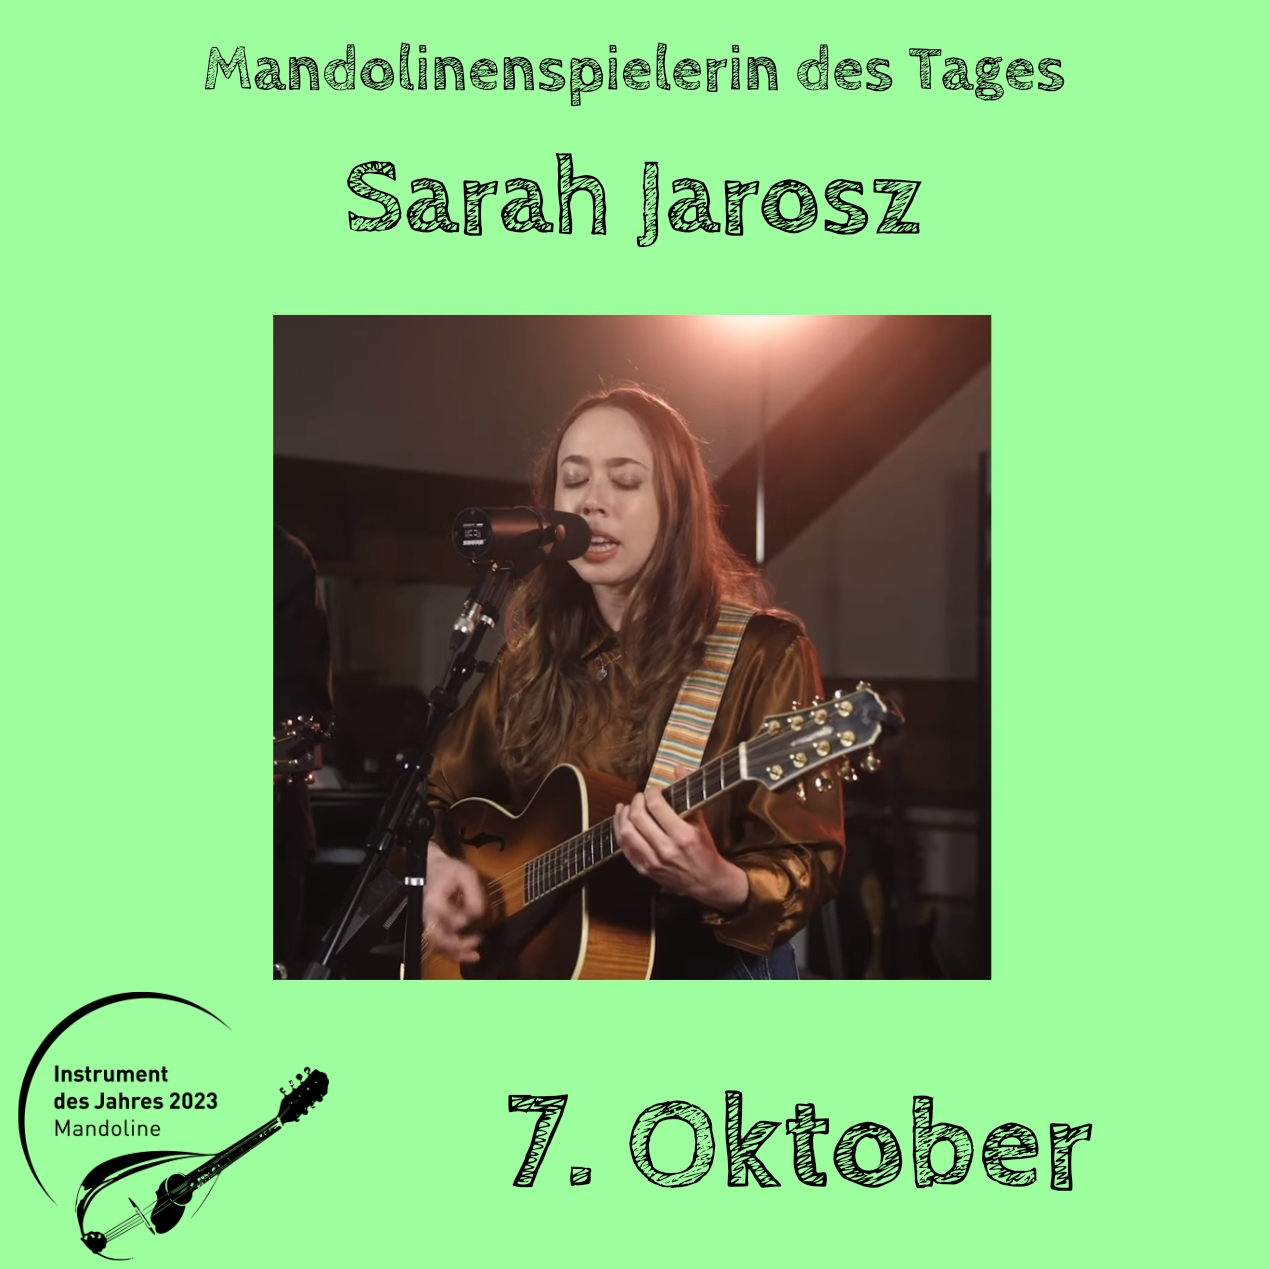 7. Oktober - Sarah Jarosz Instrument des Jahres 2023 Mandolinenspieler Mandolinenspielerin des Tages